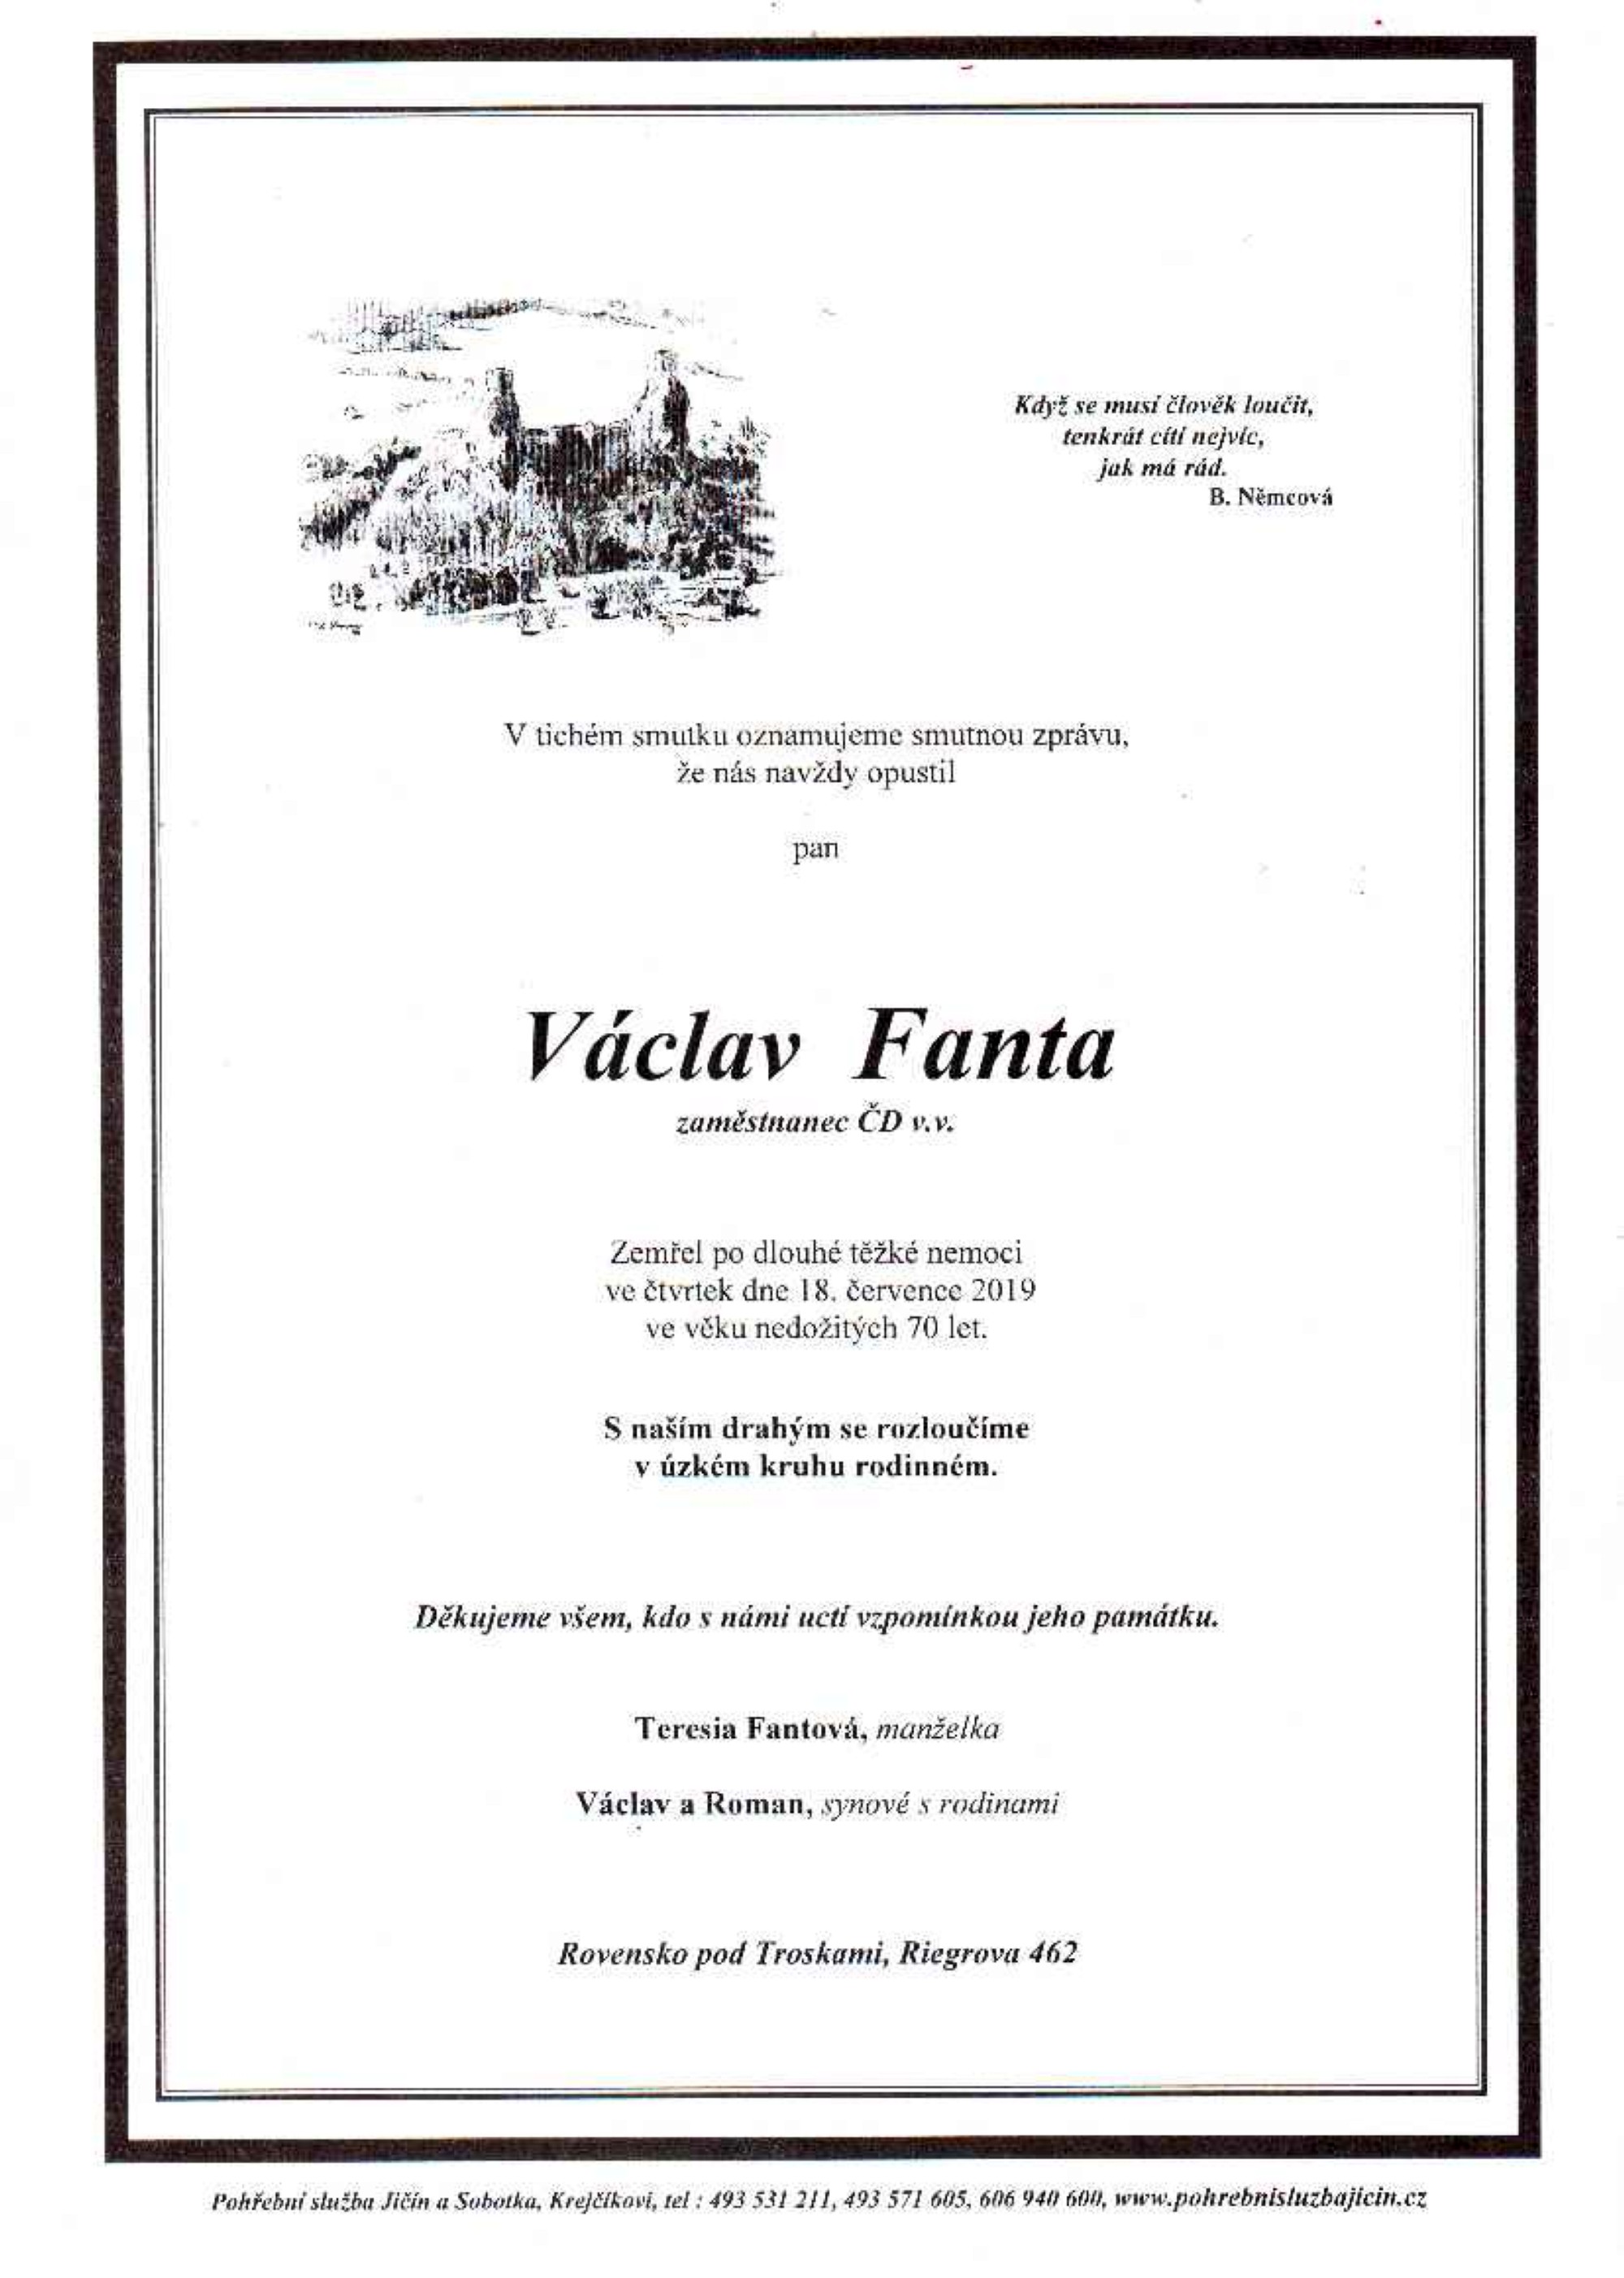 Václav Fanta